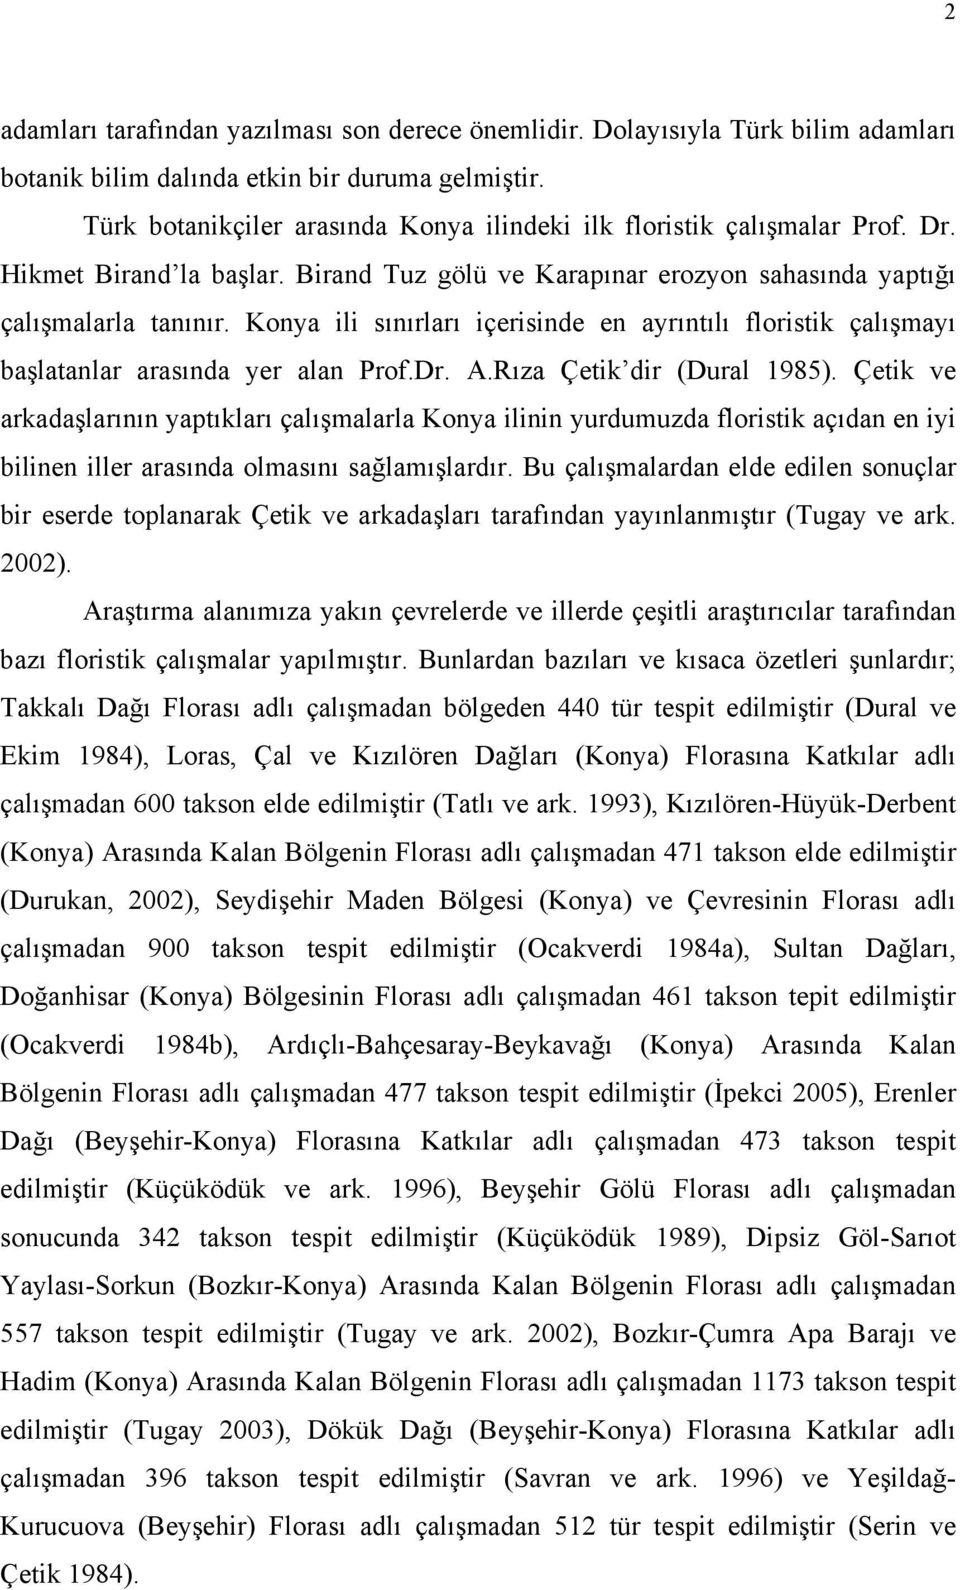 Konya ili sınırları içerisinde en ayrıntılı floristik çalışmayı başlatanlar arasında yer alan Prof.Dr. A.Rıza Çetik dir (Dural 1985).